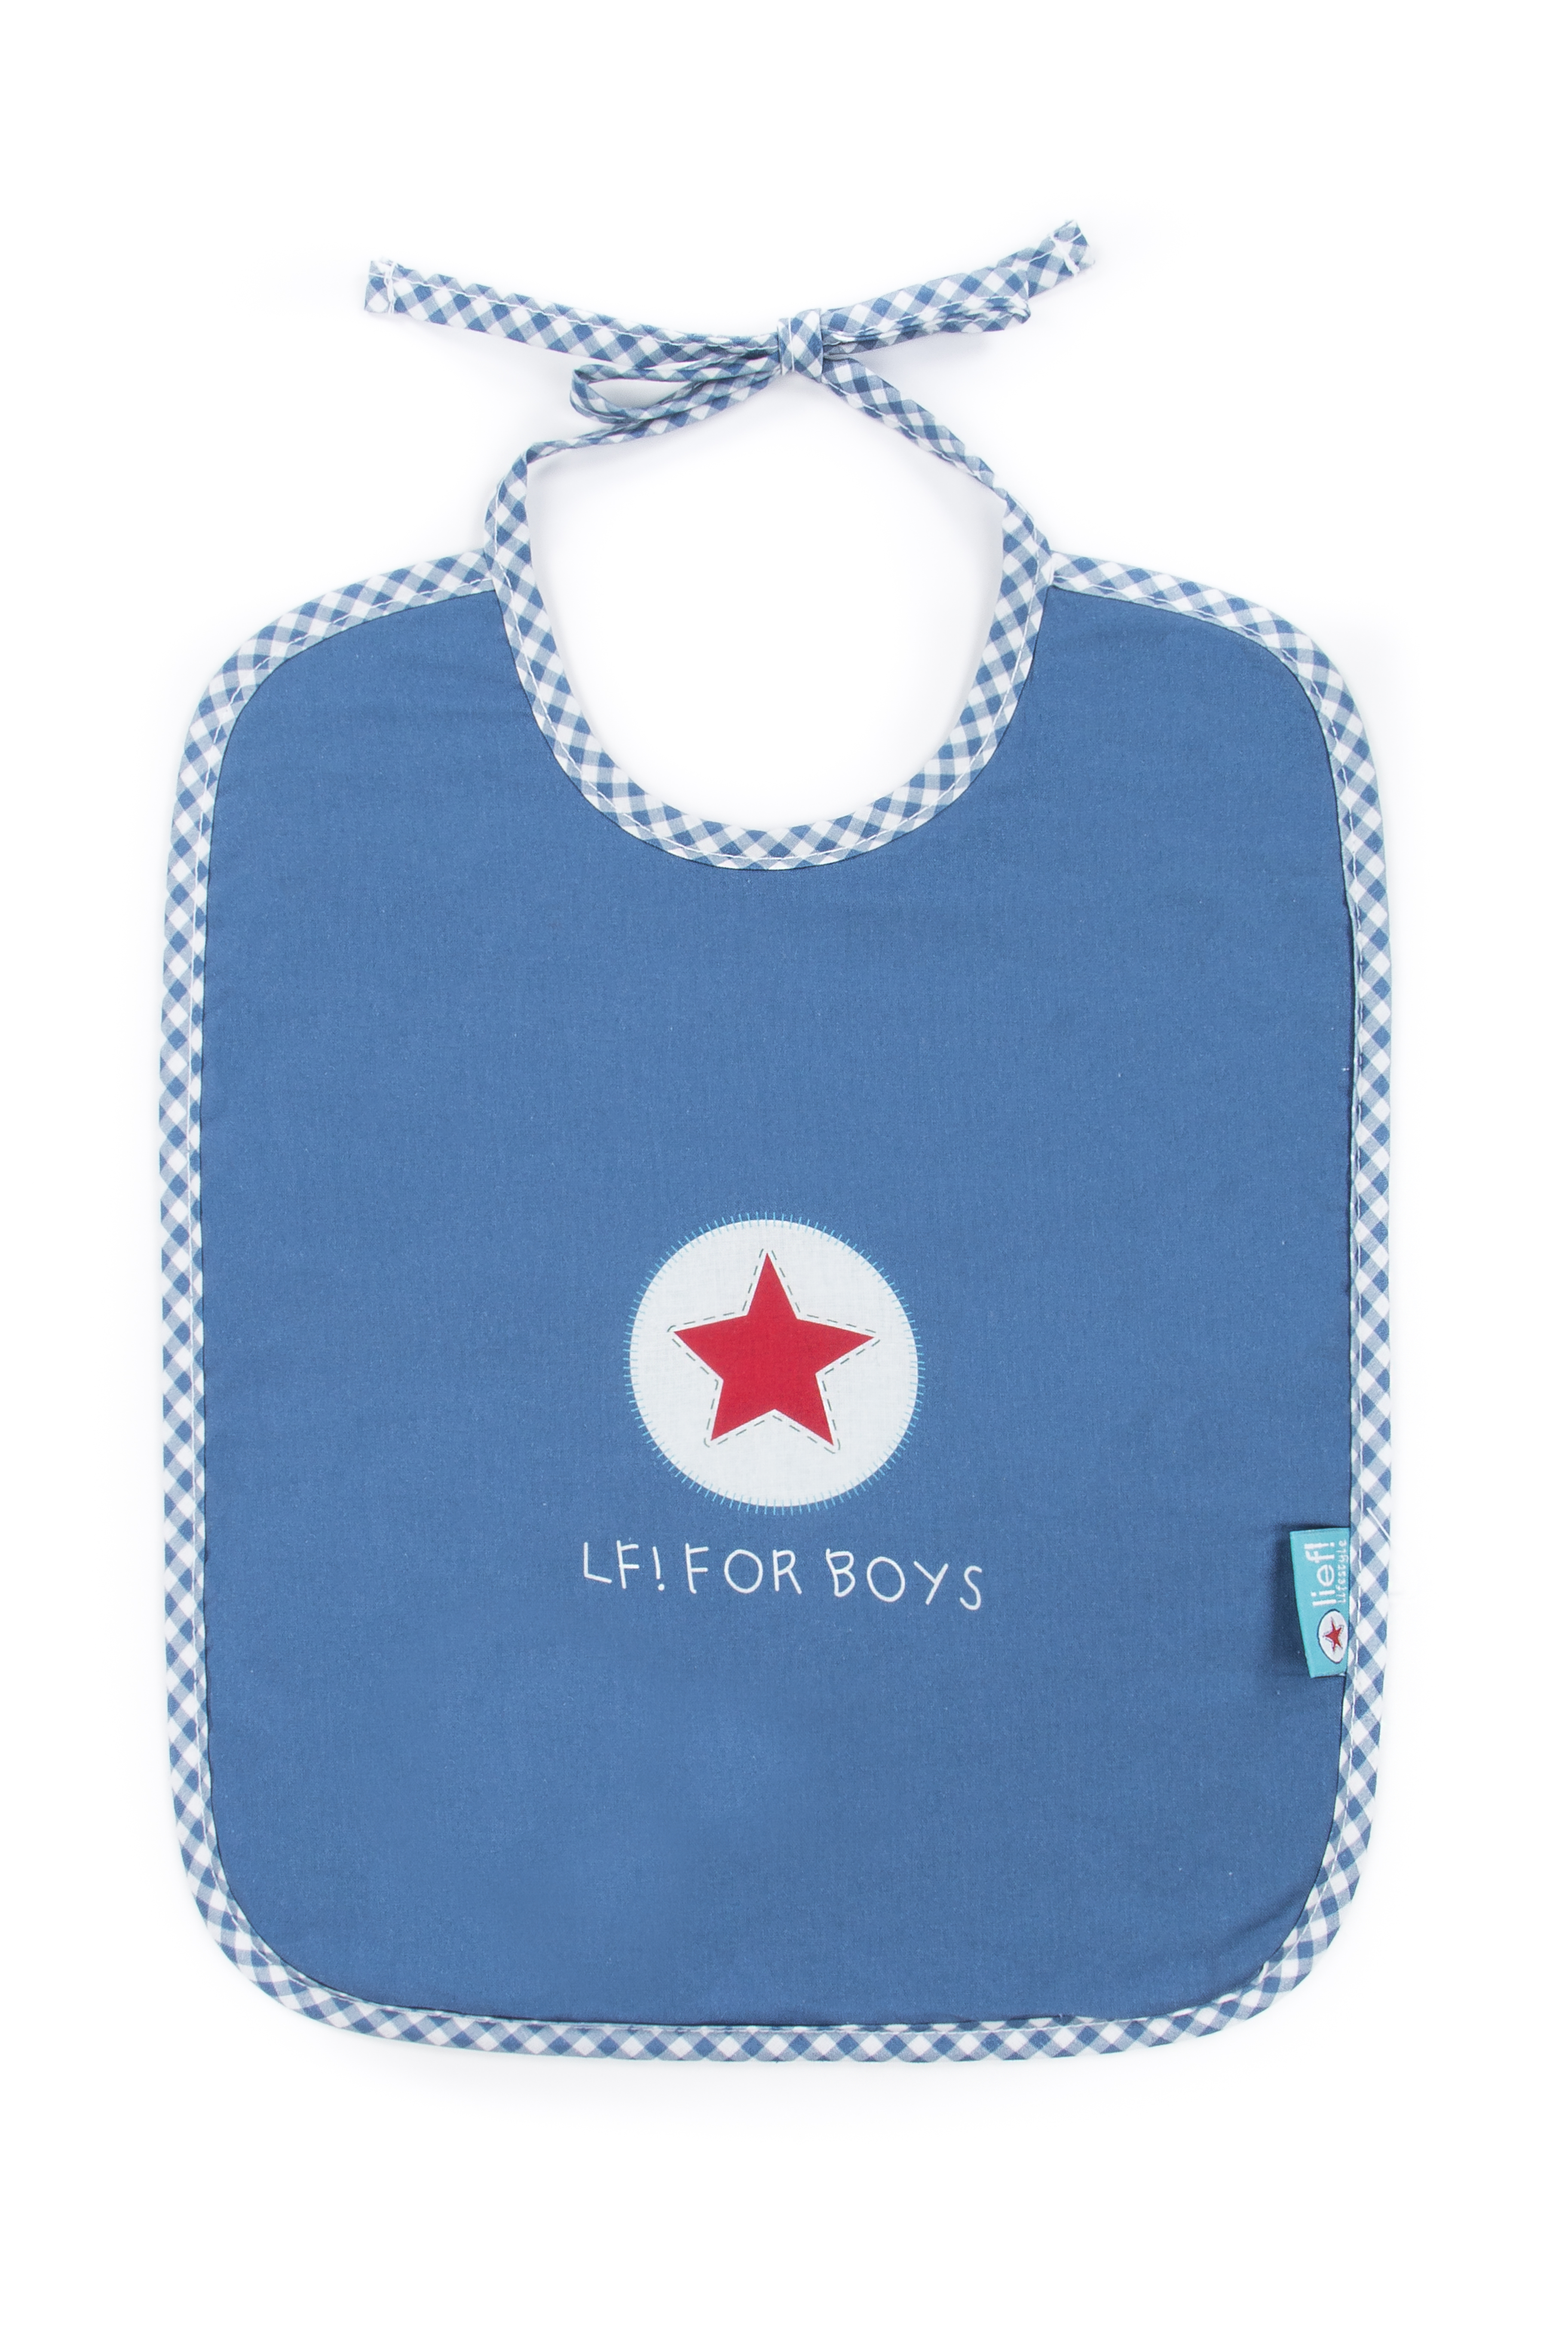 Bib with straps Boy, uni blue, 35x27 cm